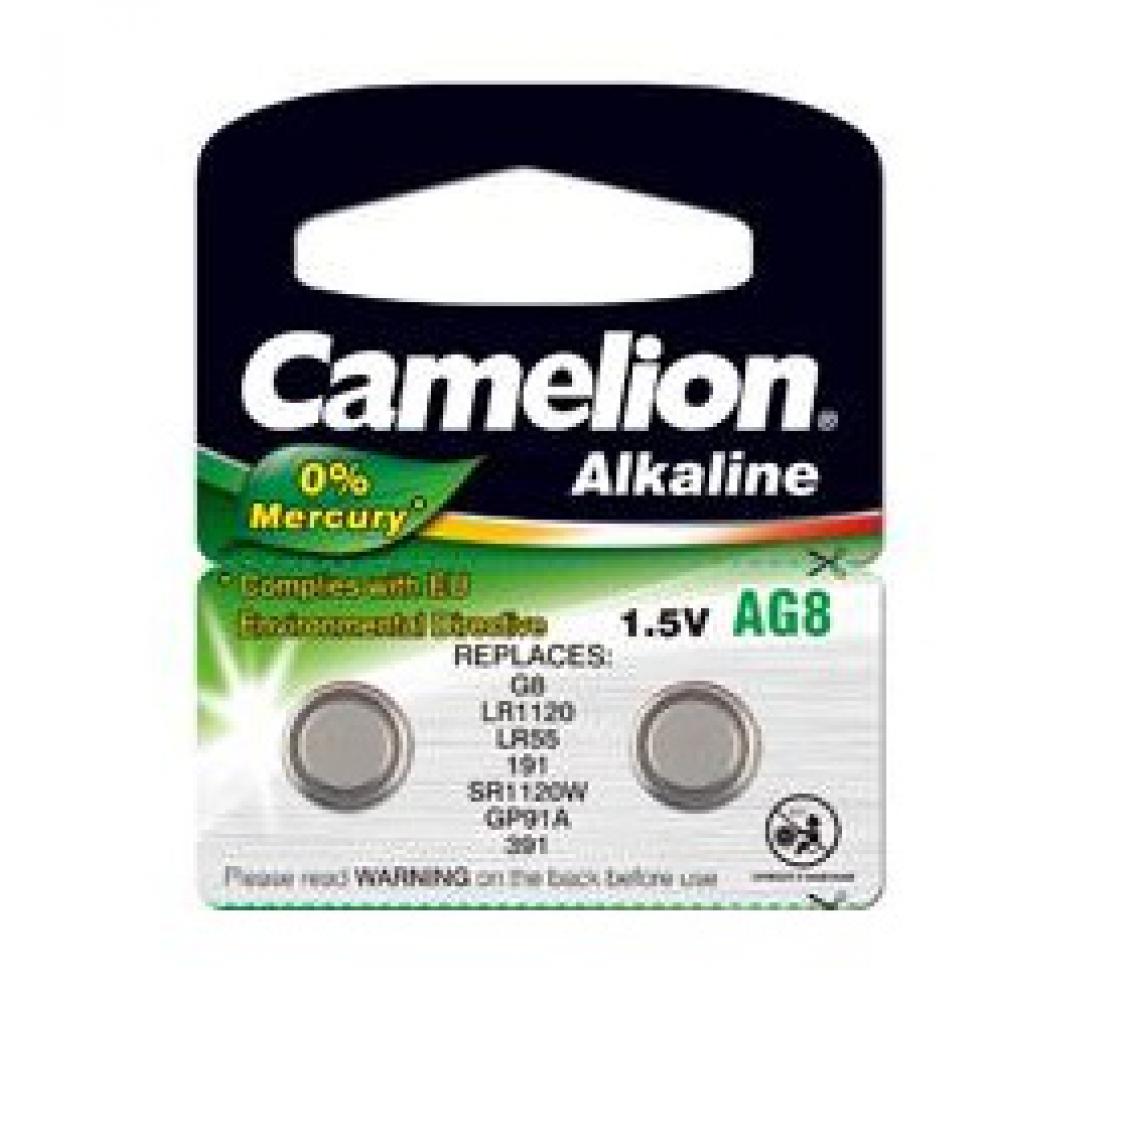 Camelion - Pack de 2 piles Camelion Alcaline AG8,LR1120,LR55,191,SR1120W,GP91A,391 0% Mercury/Hg - Piles rechargeables